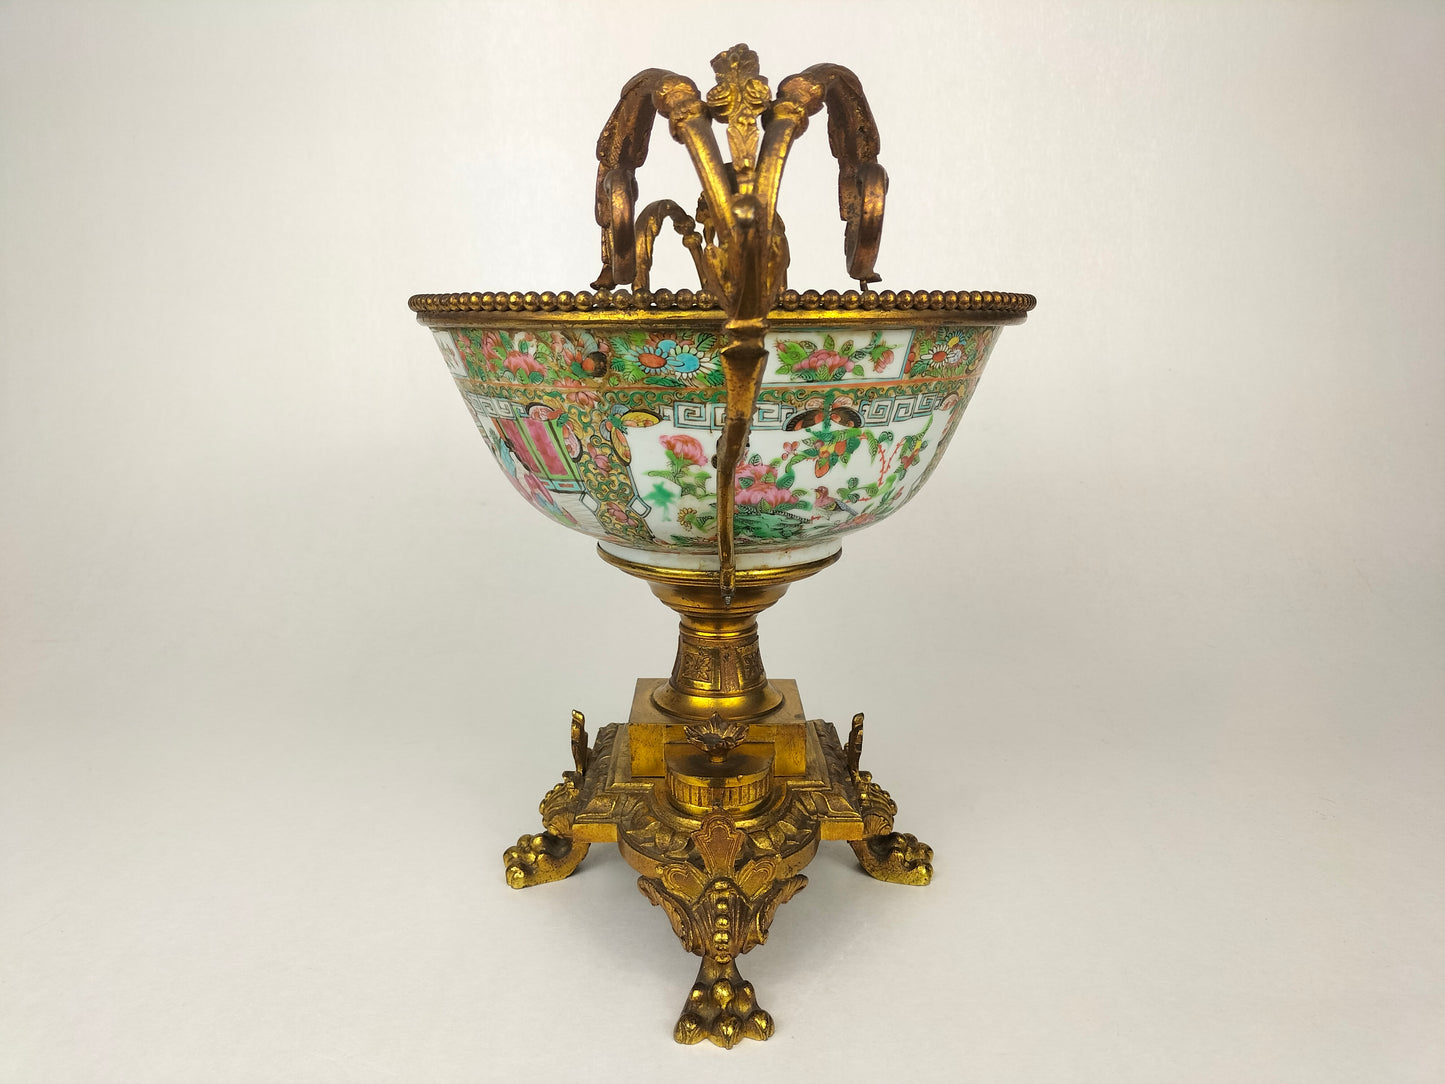 古董中国广州玫瑰花章碗，镶嵌在镀金框架中//清朝 - 19 世纪